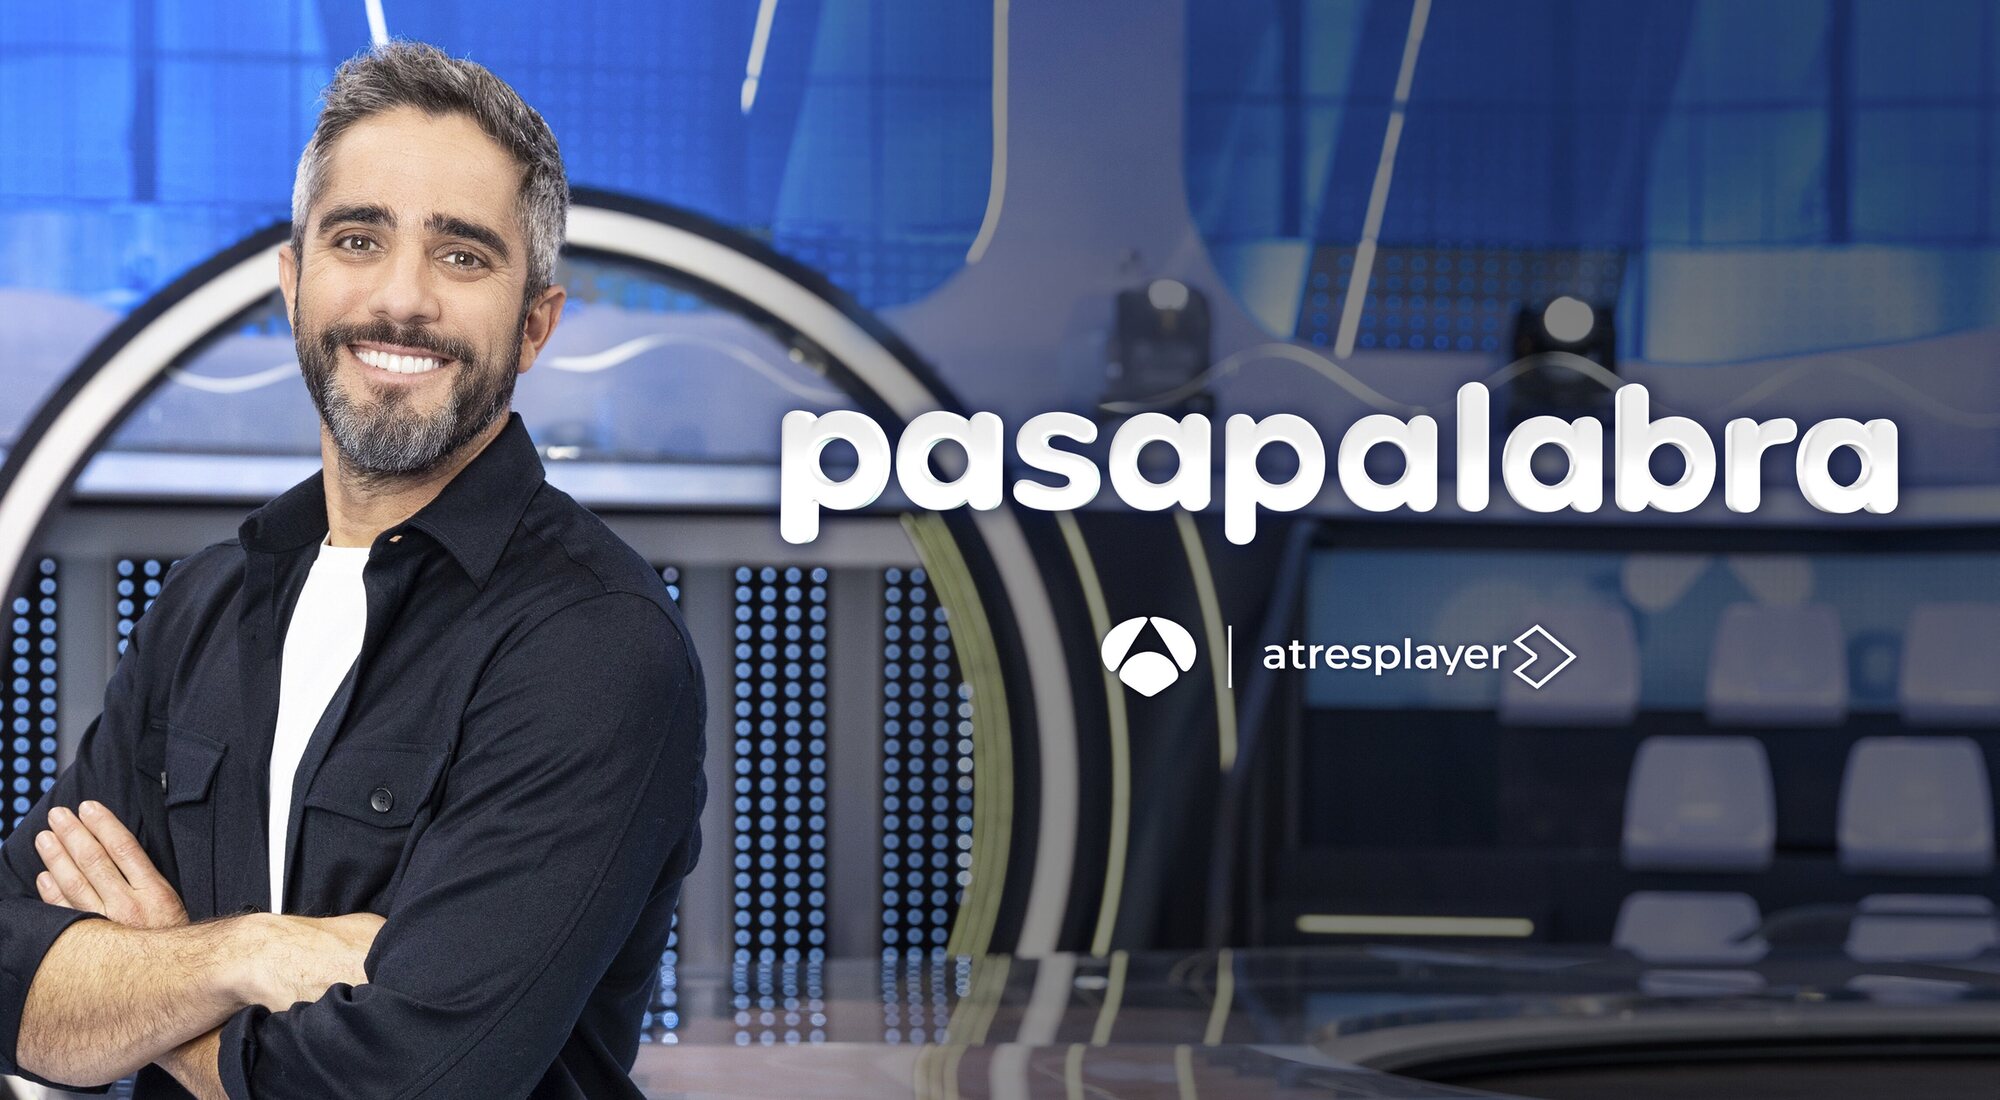 'Pasapalabra' en Antena 3 presentado por Roberto Leal